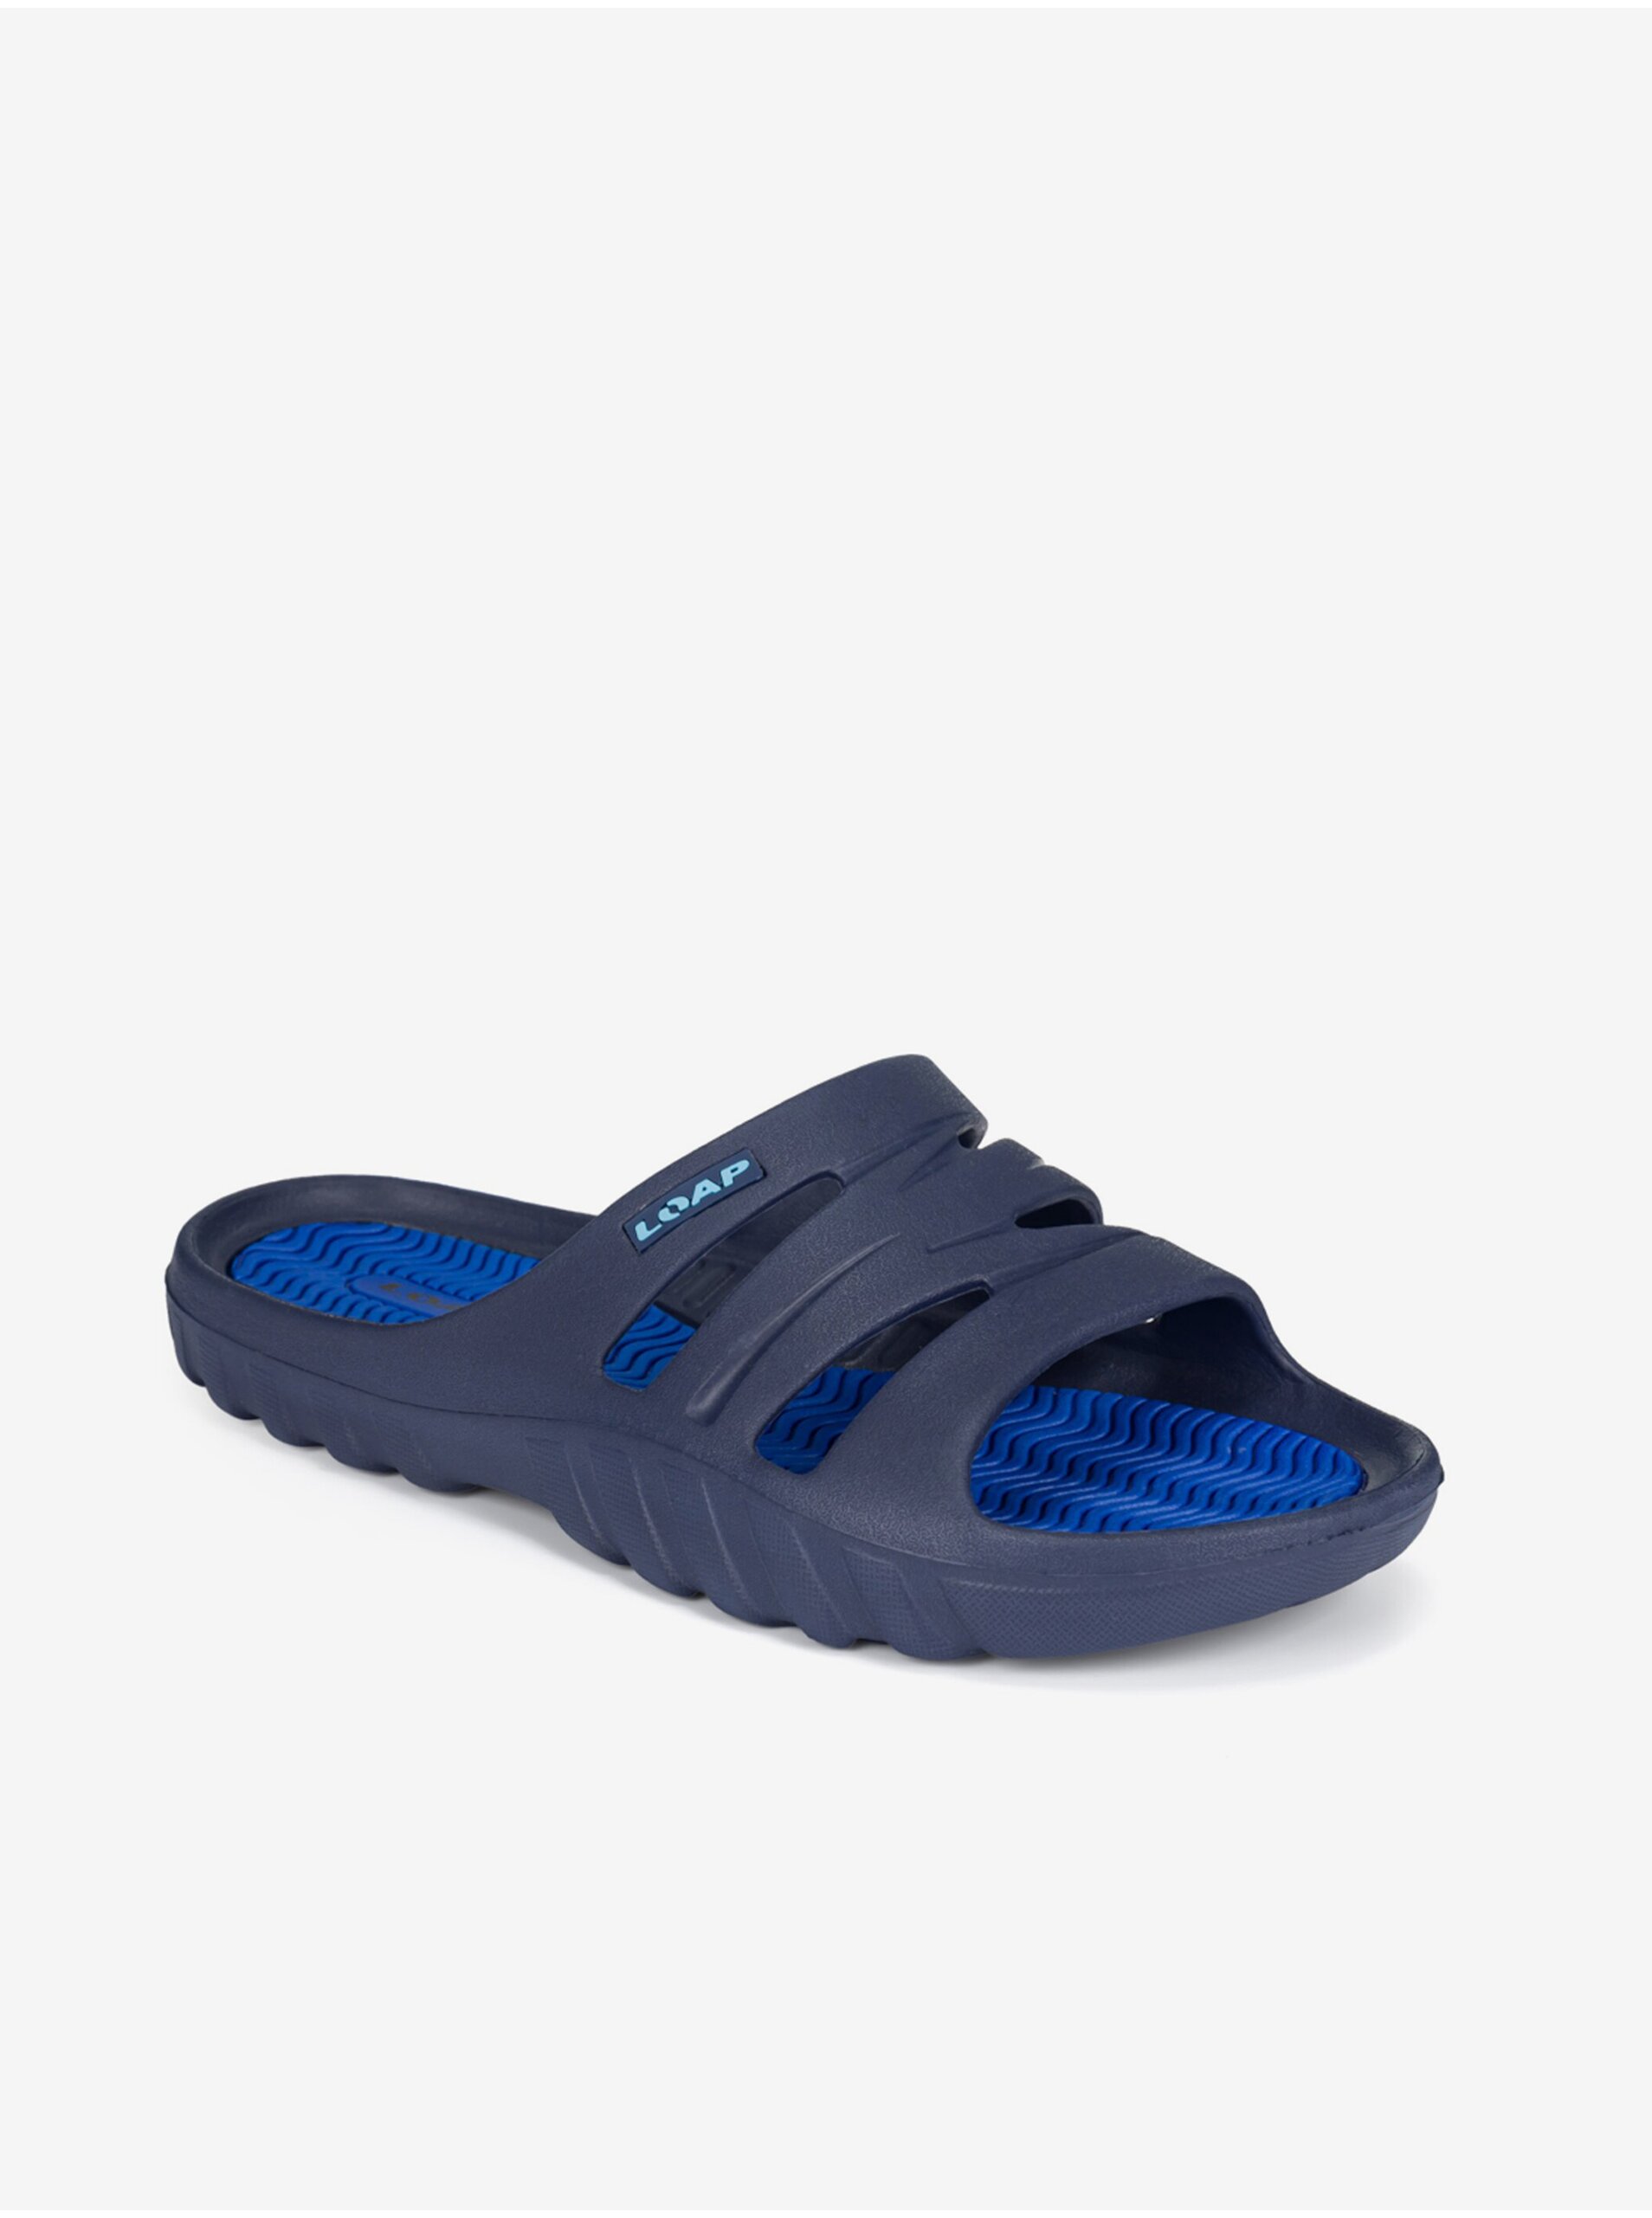 E-shop Tmavě modré pánské pantofle LOAP STASS